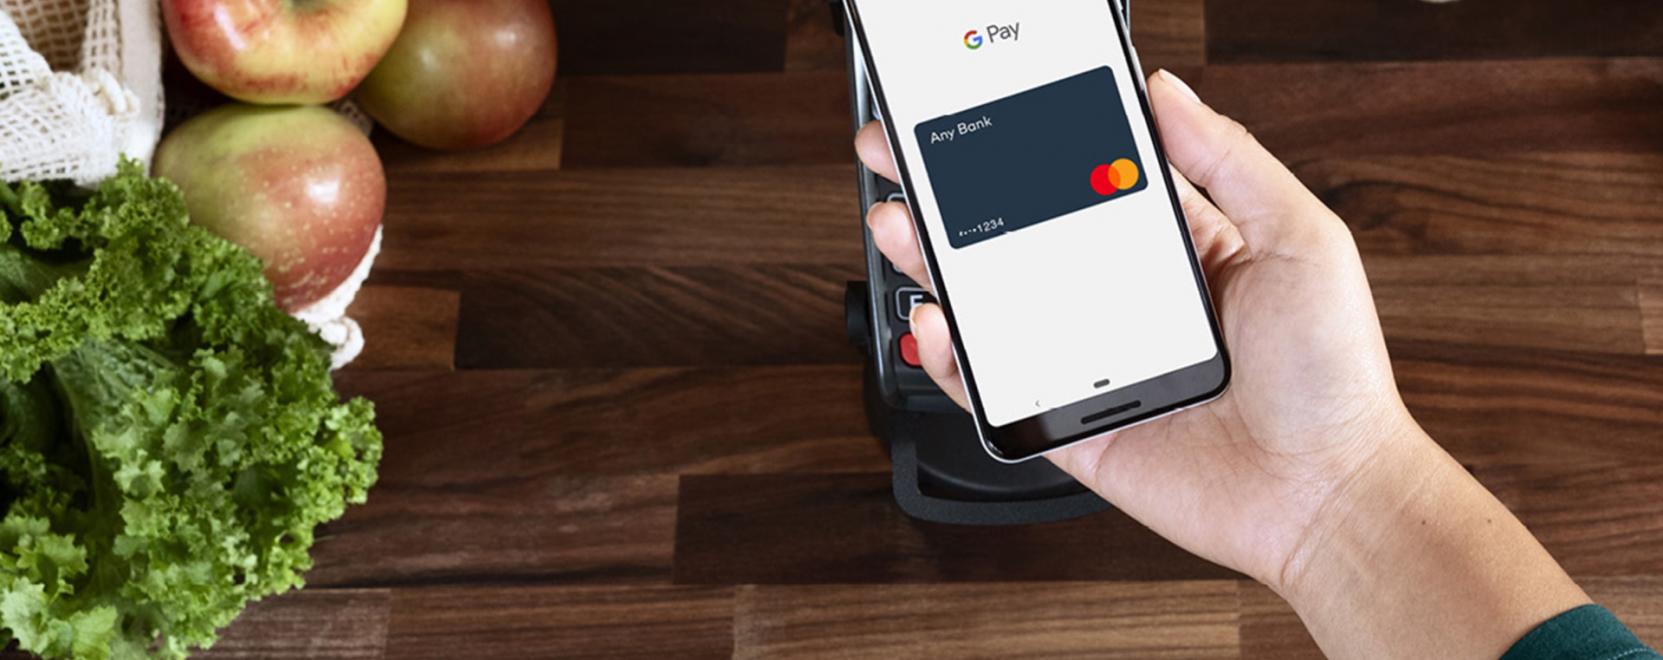 Magyarországra is megérkezett a Google Pay